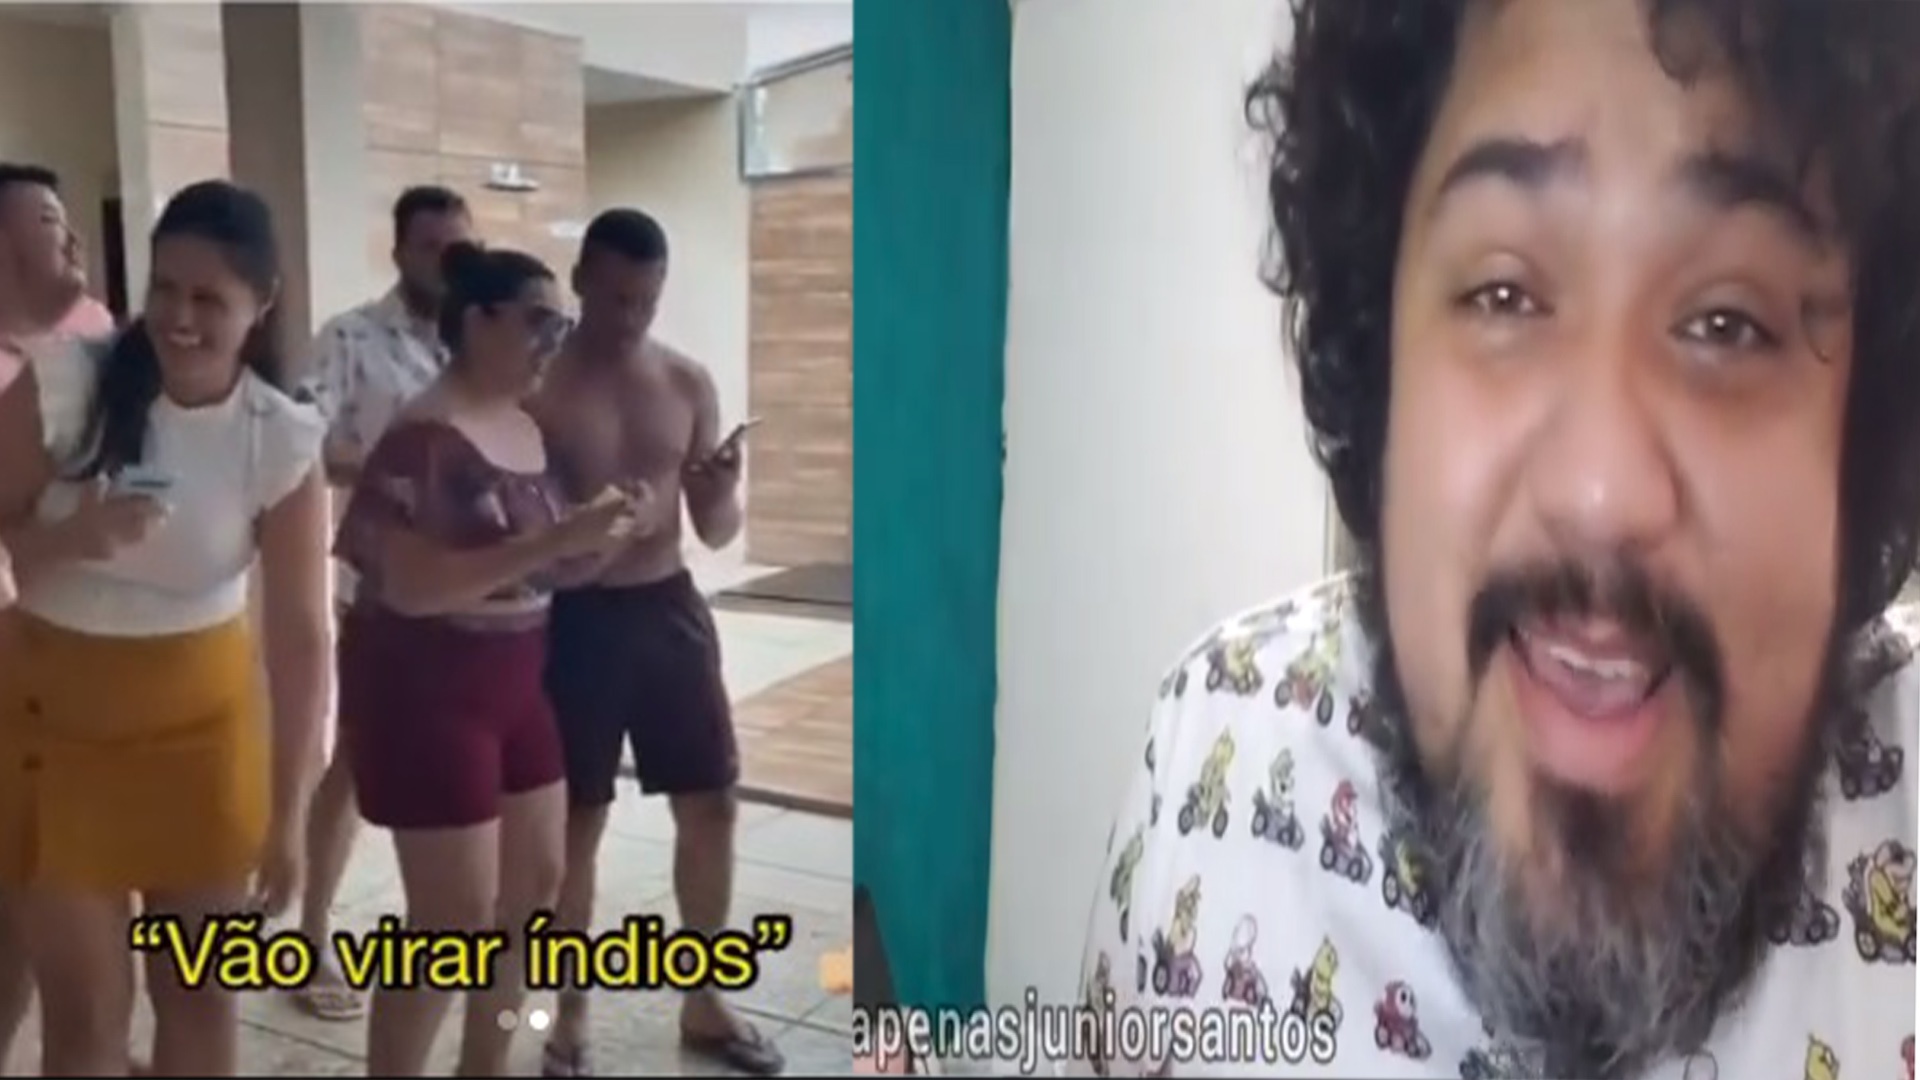 Amazonense responde ao vídeo "paródia" dos sulistas; "aprendam como é que se faz."